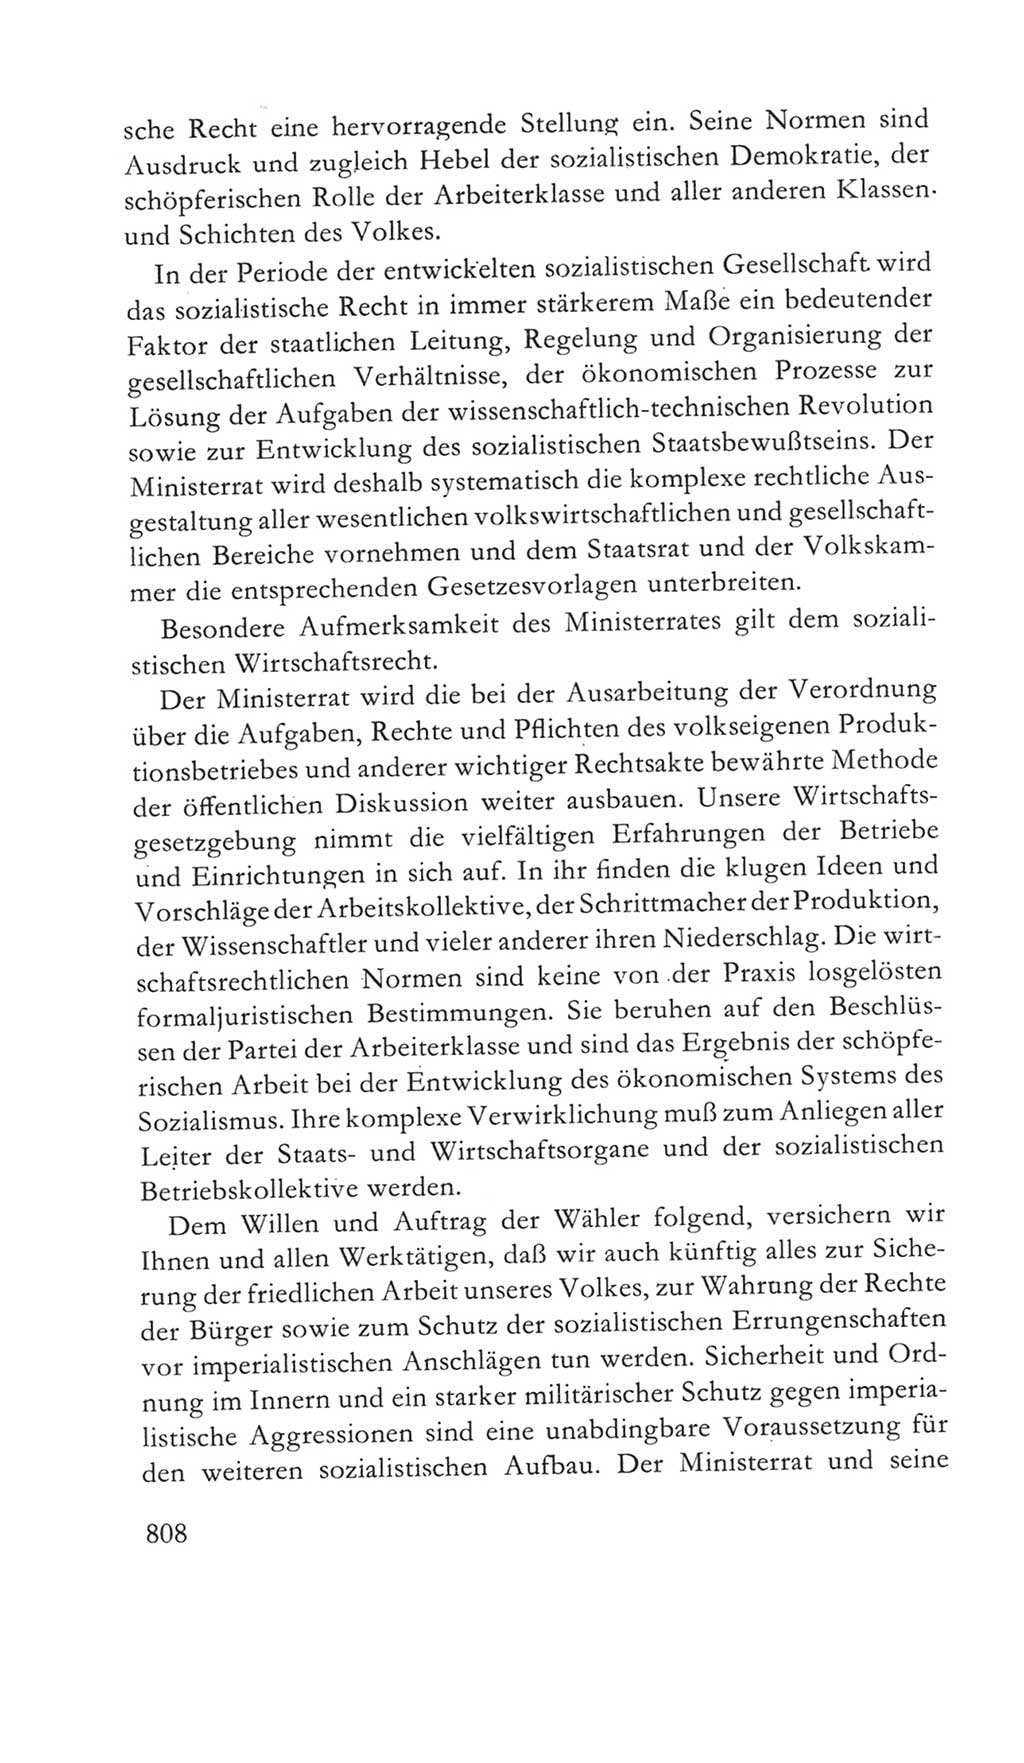 Volkskammer (VK) der Deutschen Demokratischen Republik (DDR) 5. Wahlperiode 1967-1971, Seite 808 (VK. DDR 5. WP. 1967-1971, S. 808)